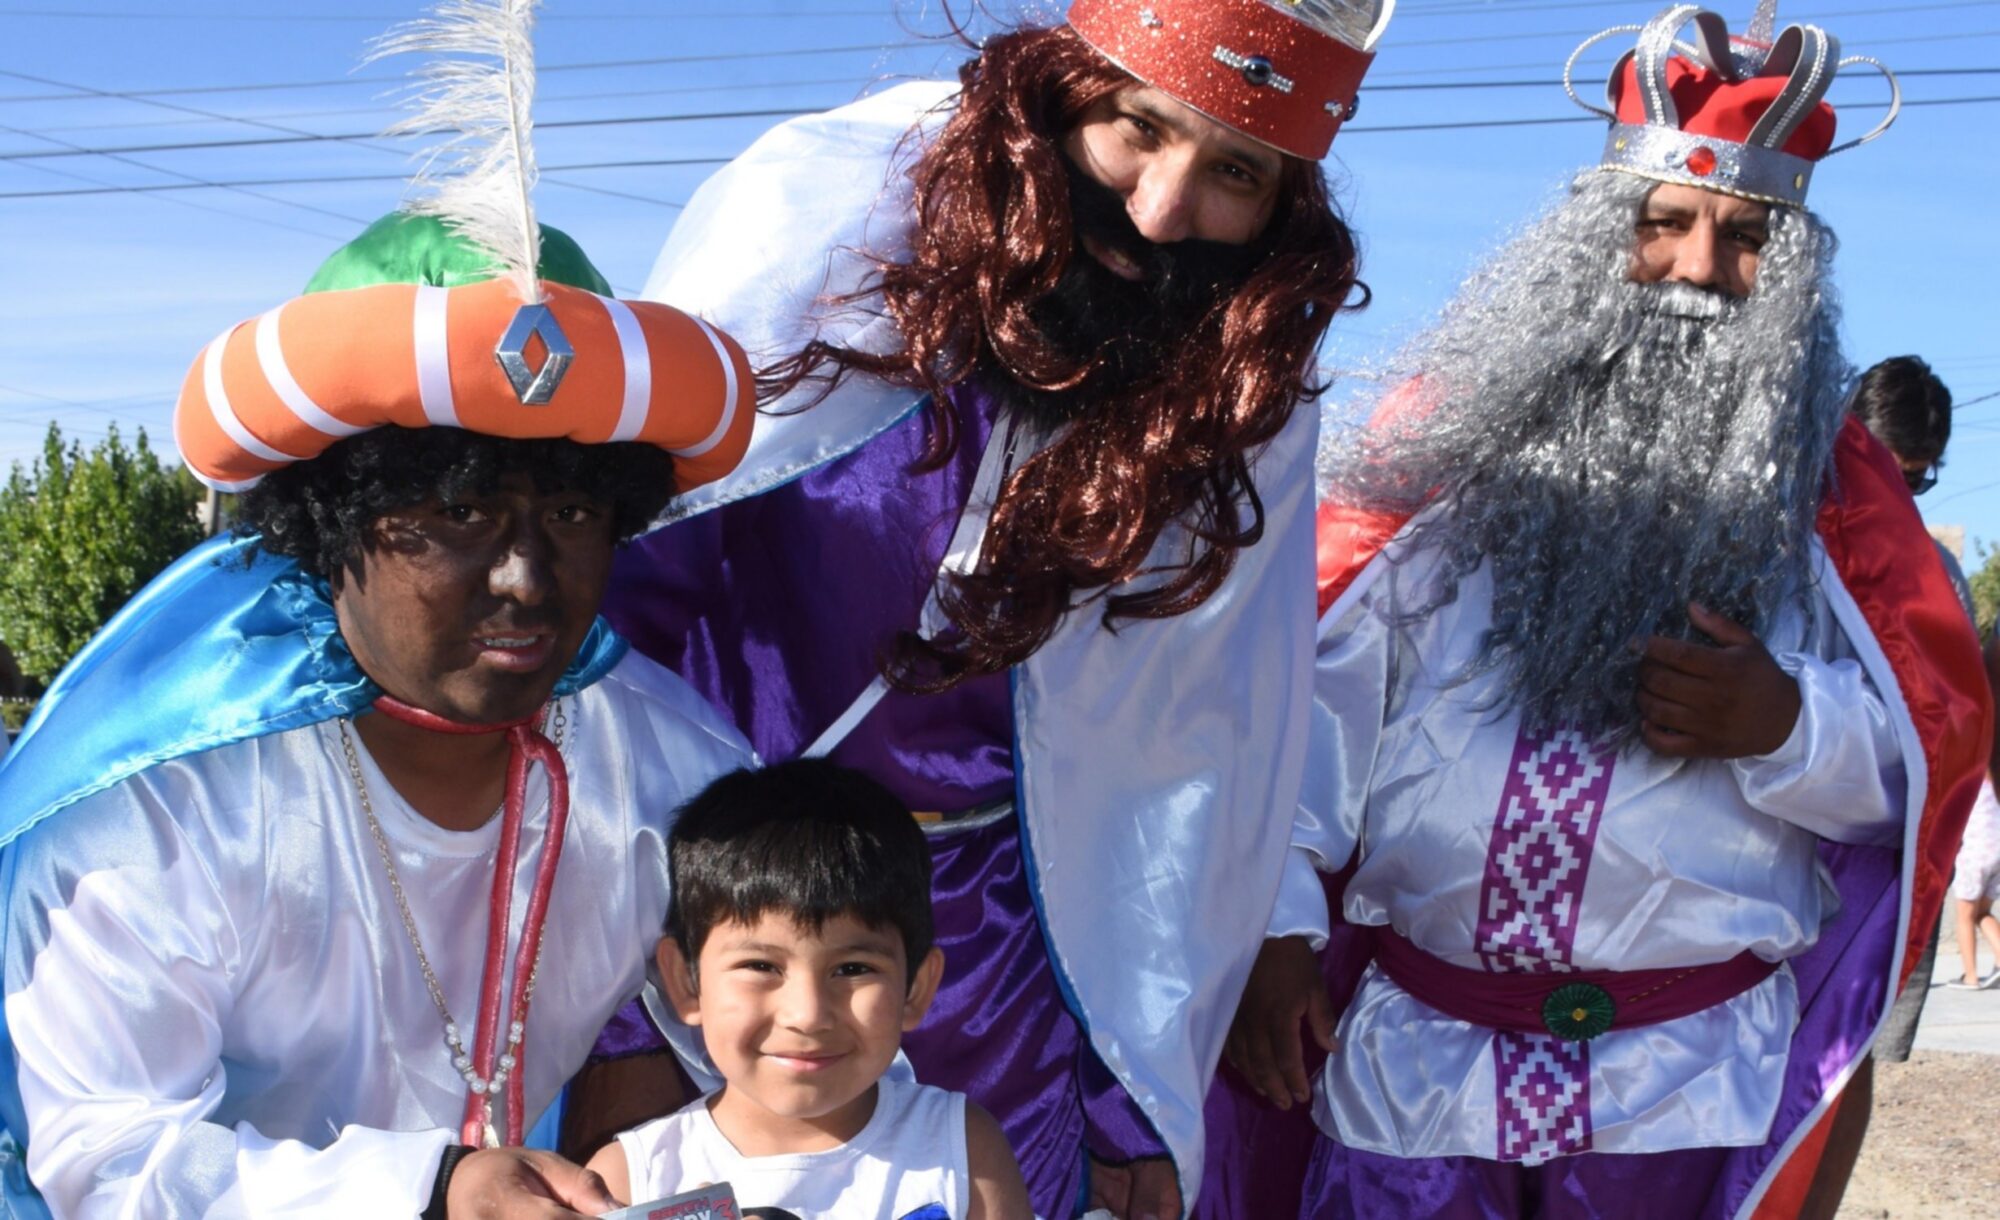 Habrá un colorido desfile de los Reyes Magos, que incluirá shows de artistas callejeros en Playa Unión